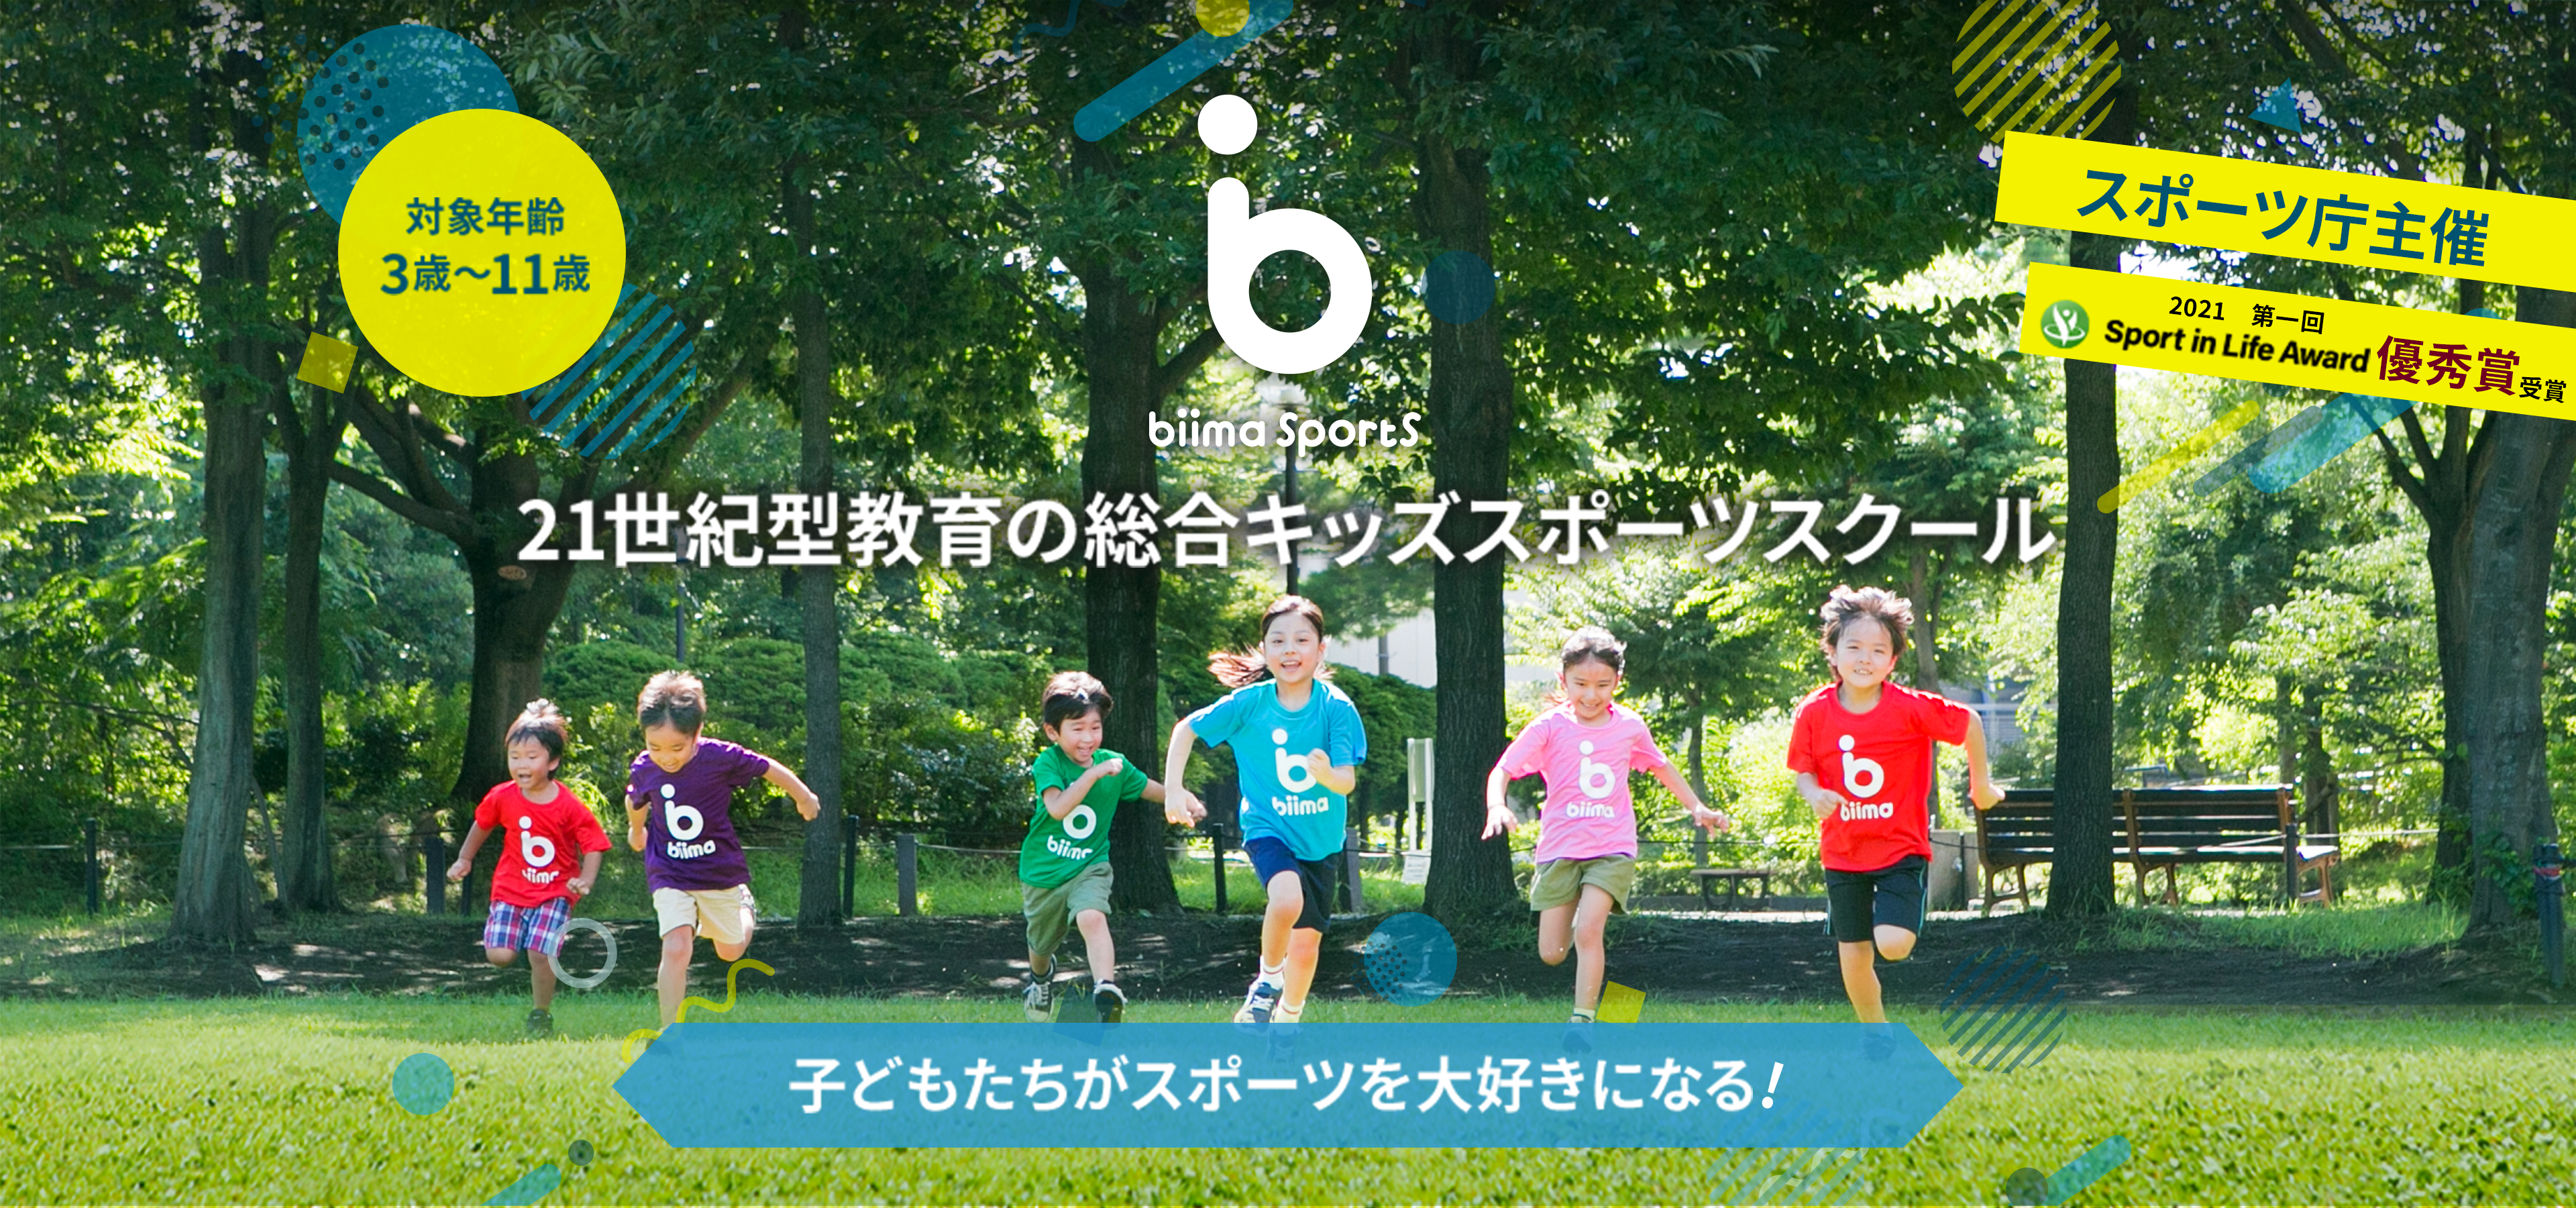 biima sports 21世紀型教育の総合キッズスポーツスクール